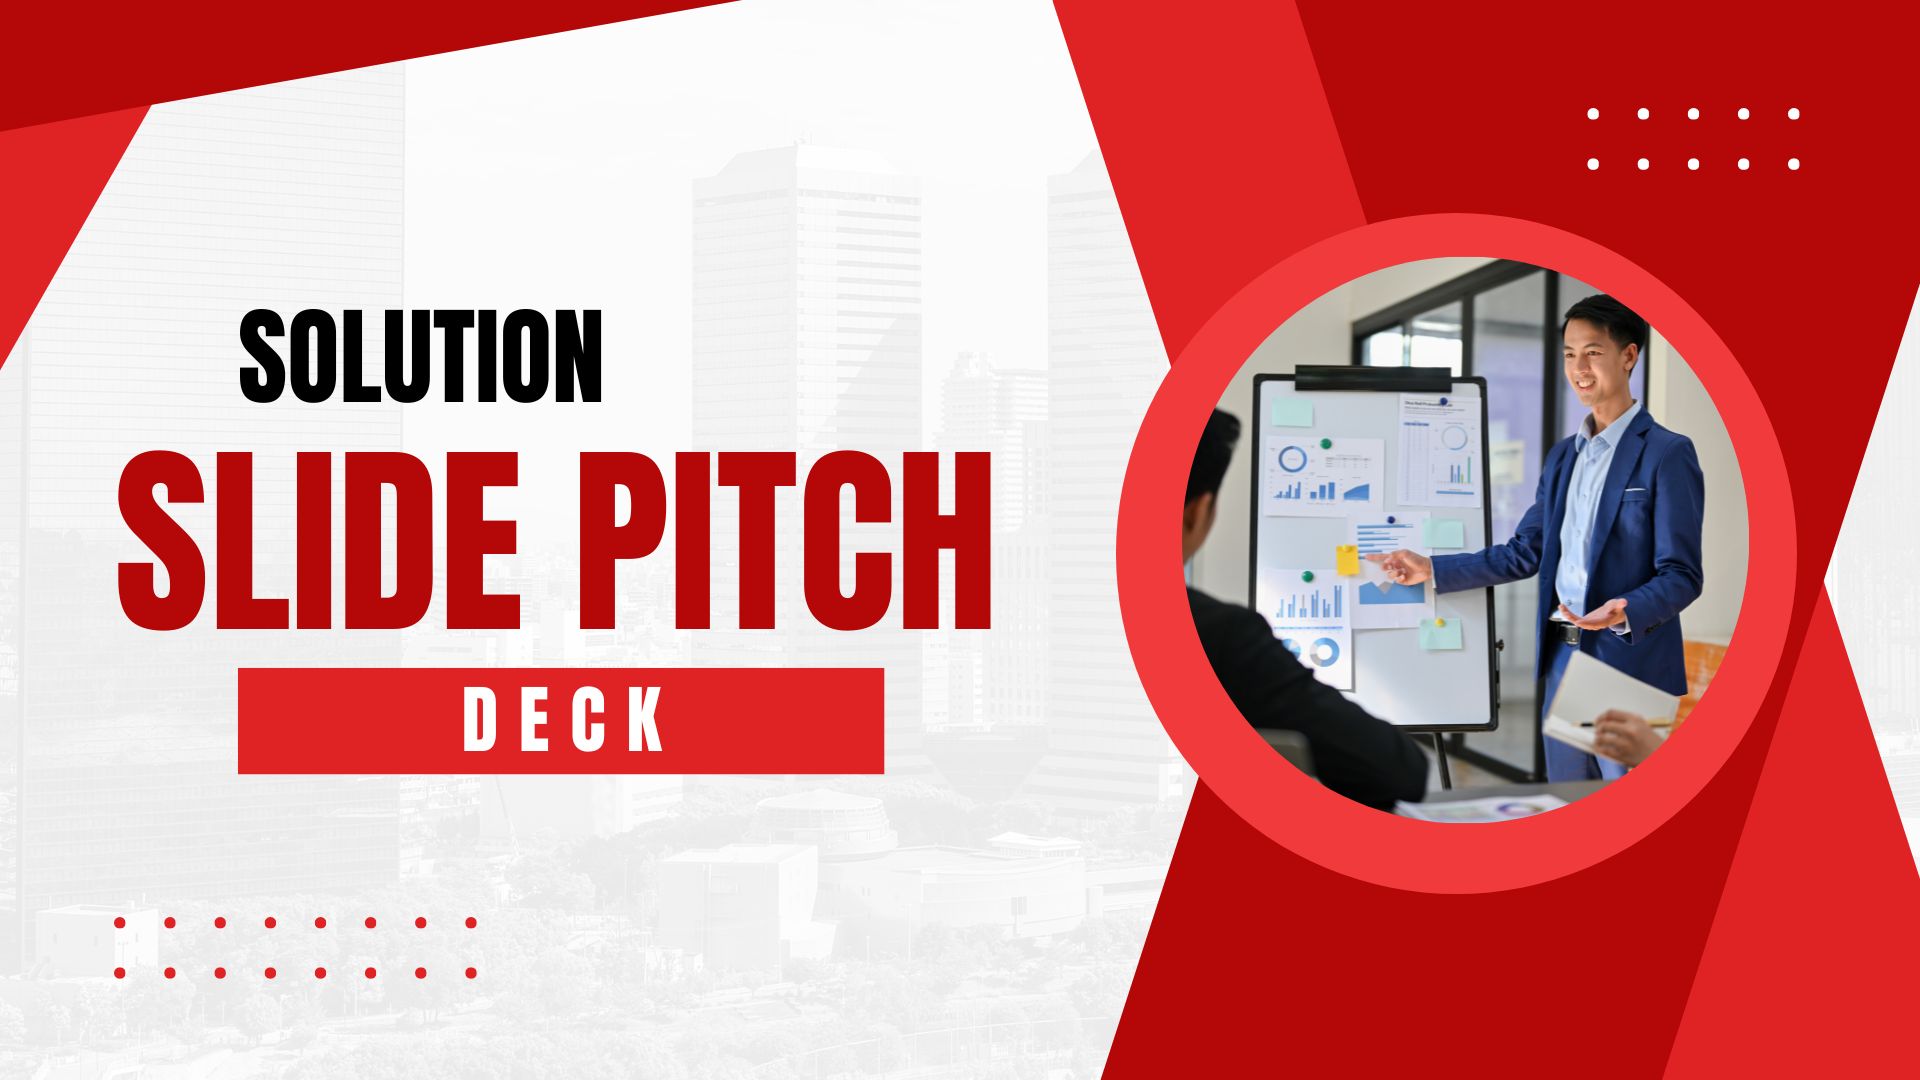 Solution Slide Pitch Deck